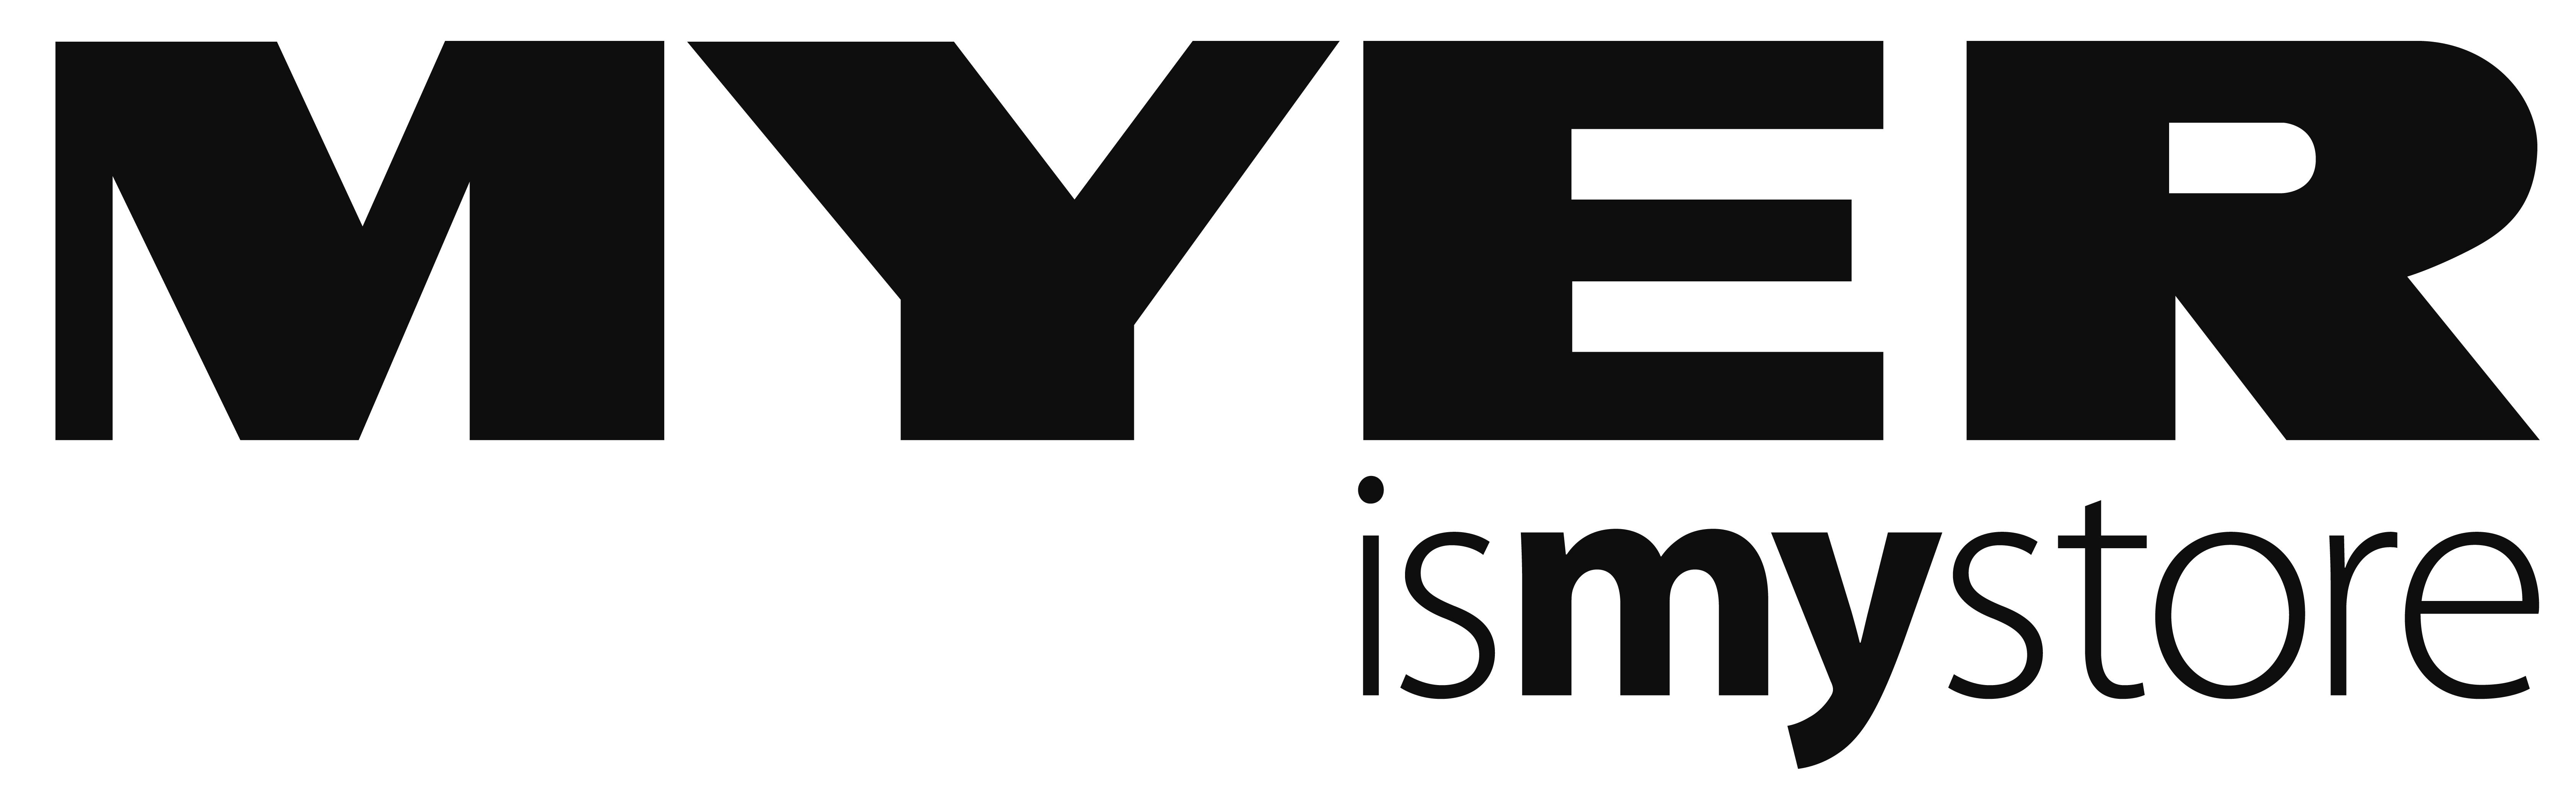 Myer Logo - MYER Logo - MELBOURNE GIRL